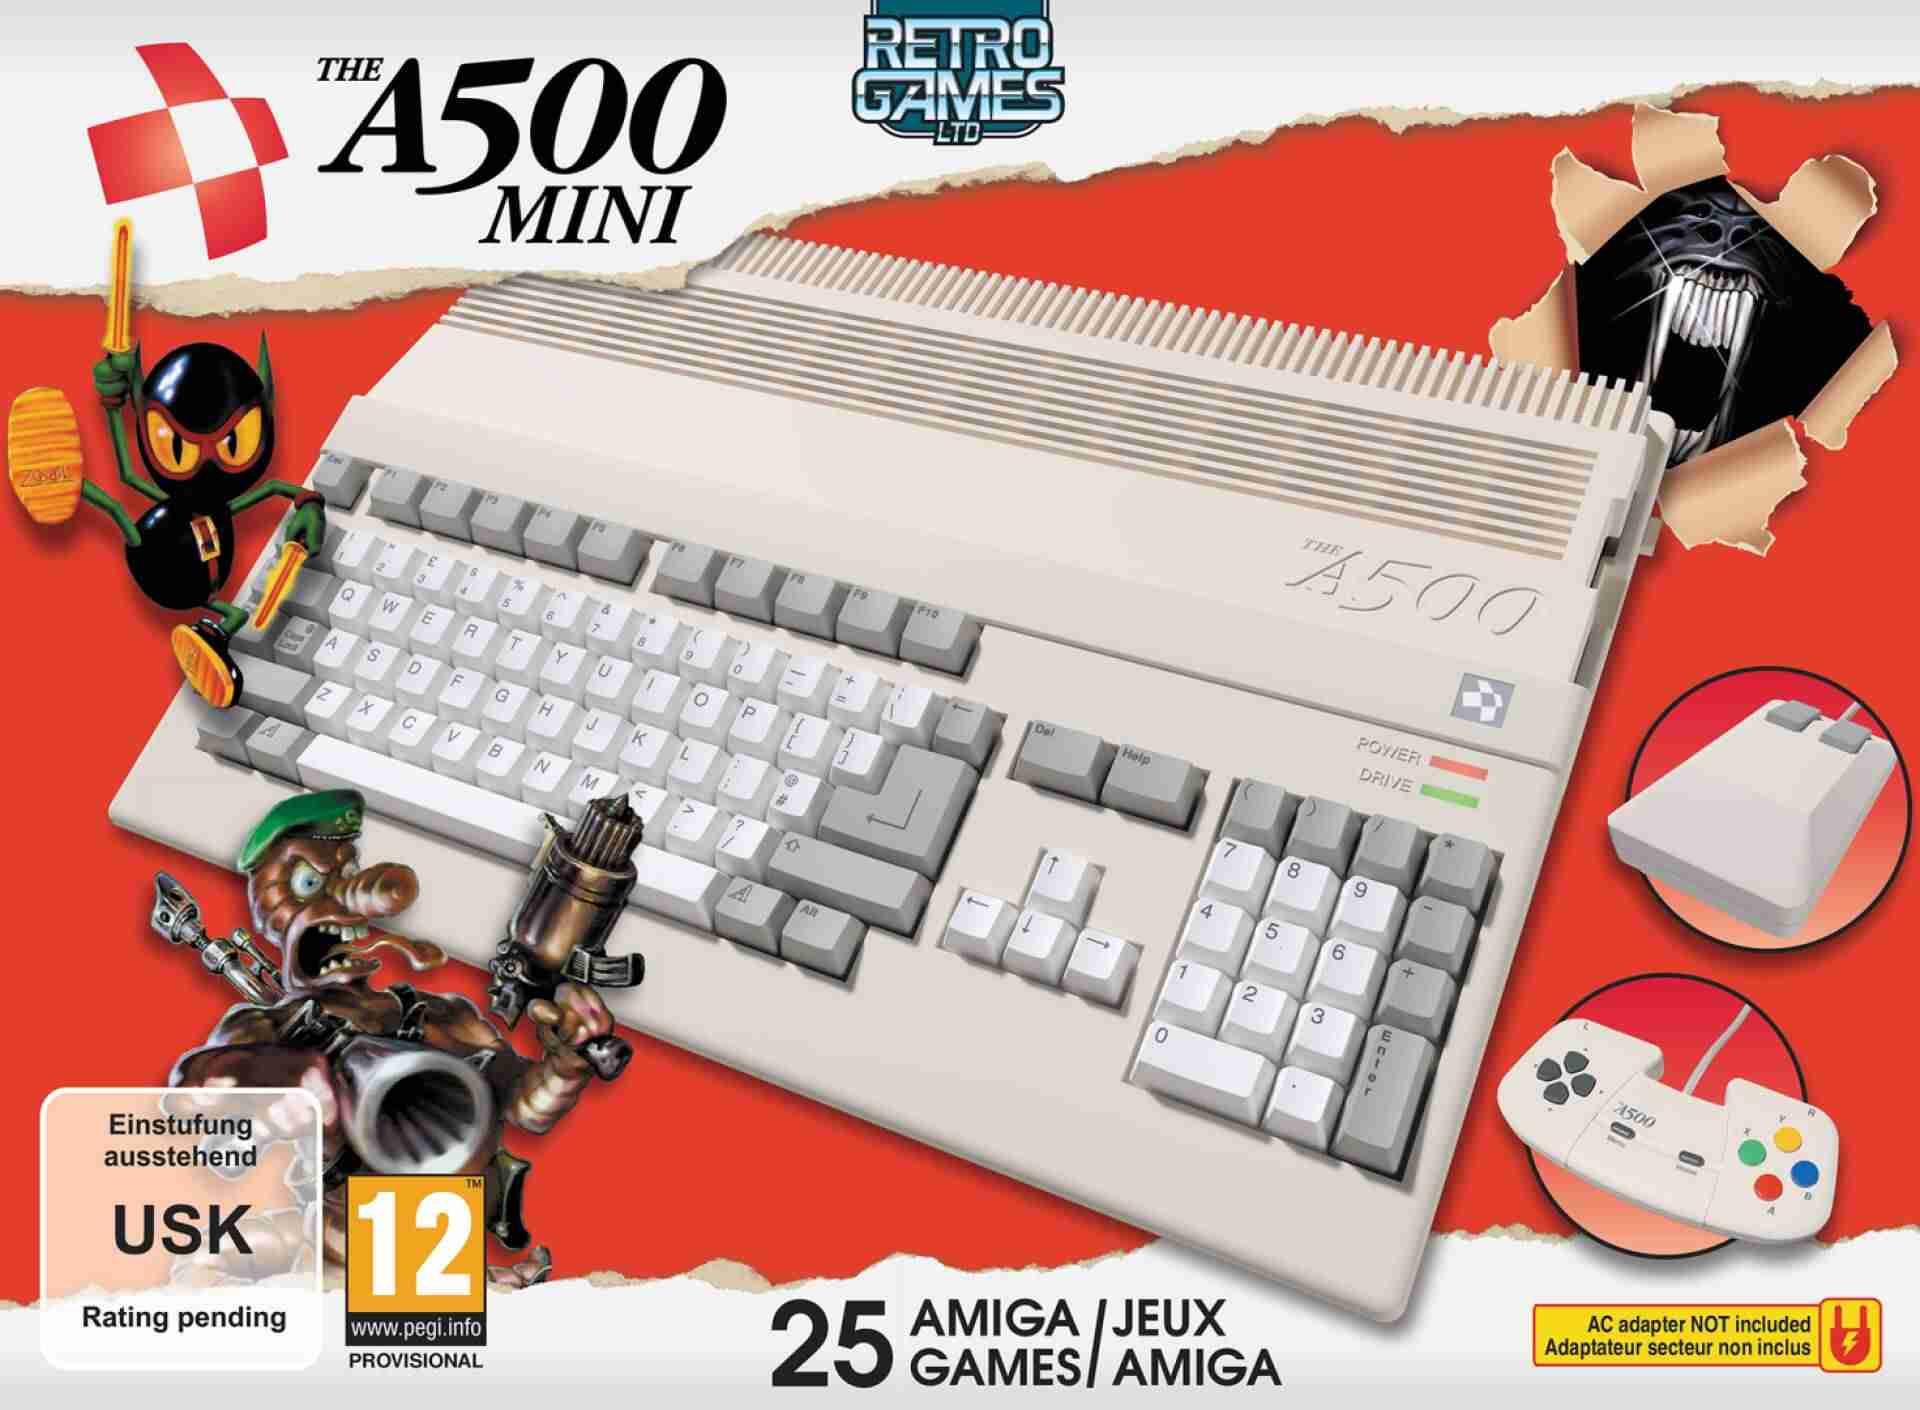 THEA500 Mini: Amiga 500 è pronto a tornare